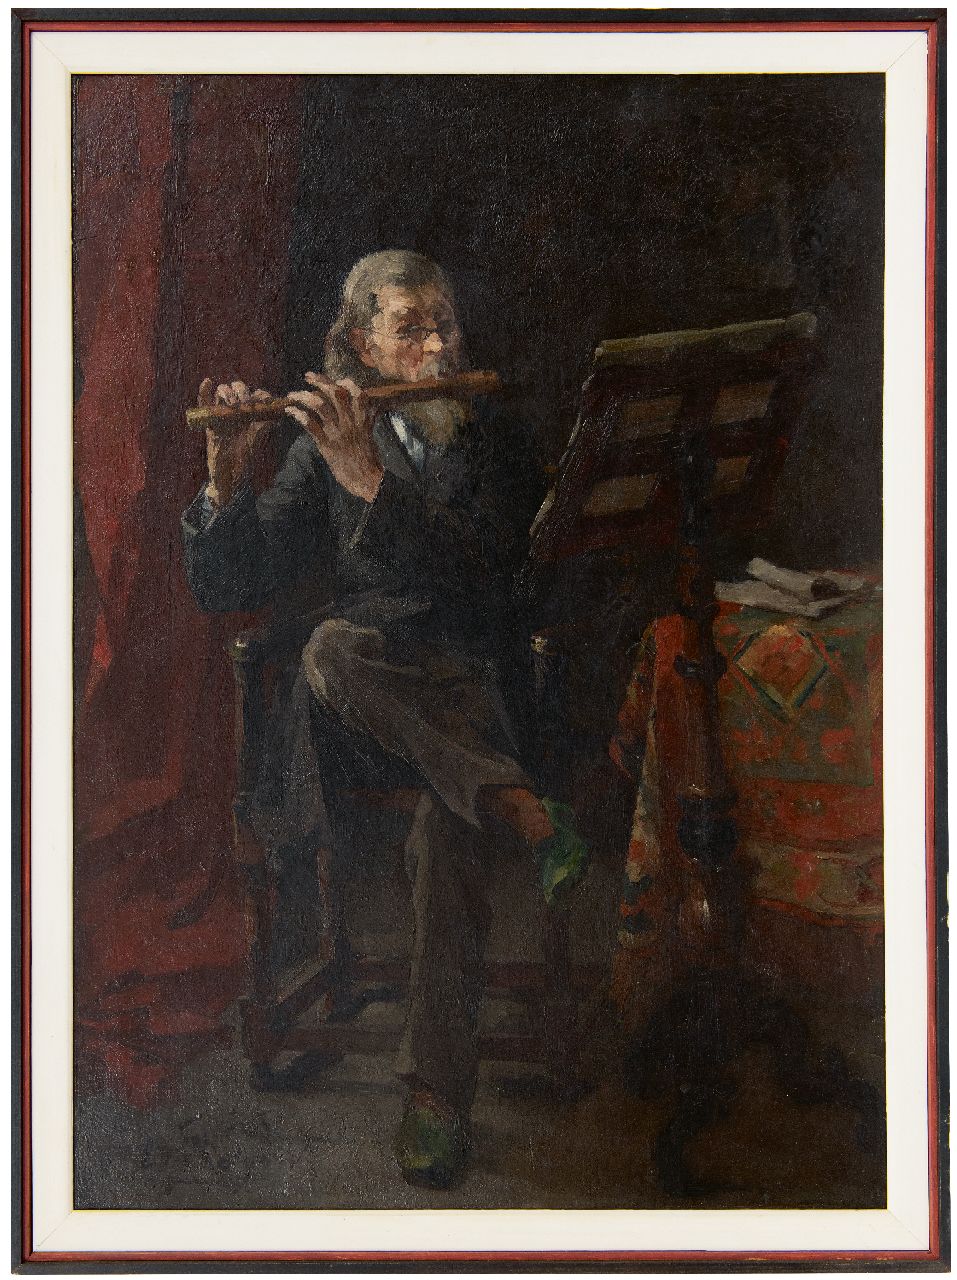 Frankfort E.  | Eduard Frankfort | Schilderijen te koop aangeboden | De fluitspeler, olieverf op doek 72,0 x 51,8 cm, gesigneerd linksonder en gedateerd '90